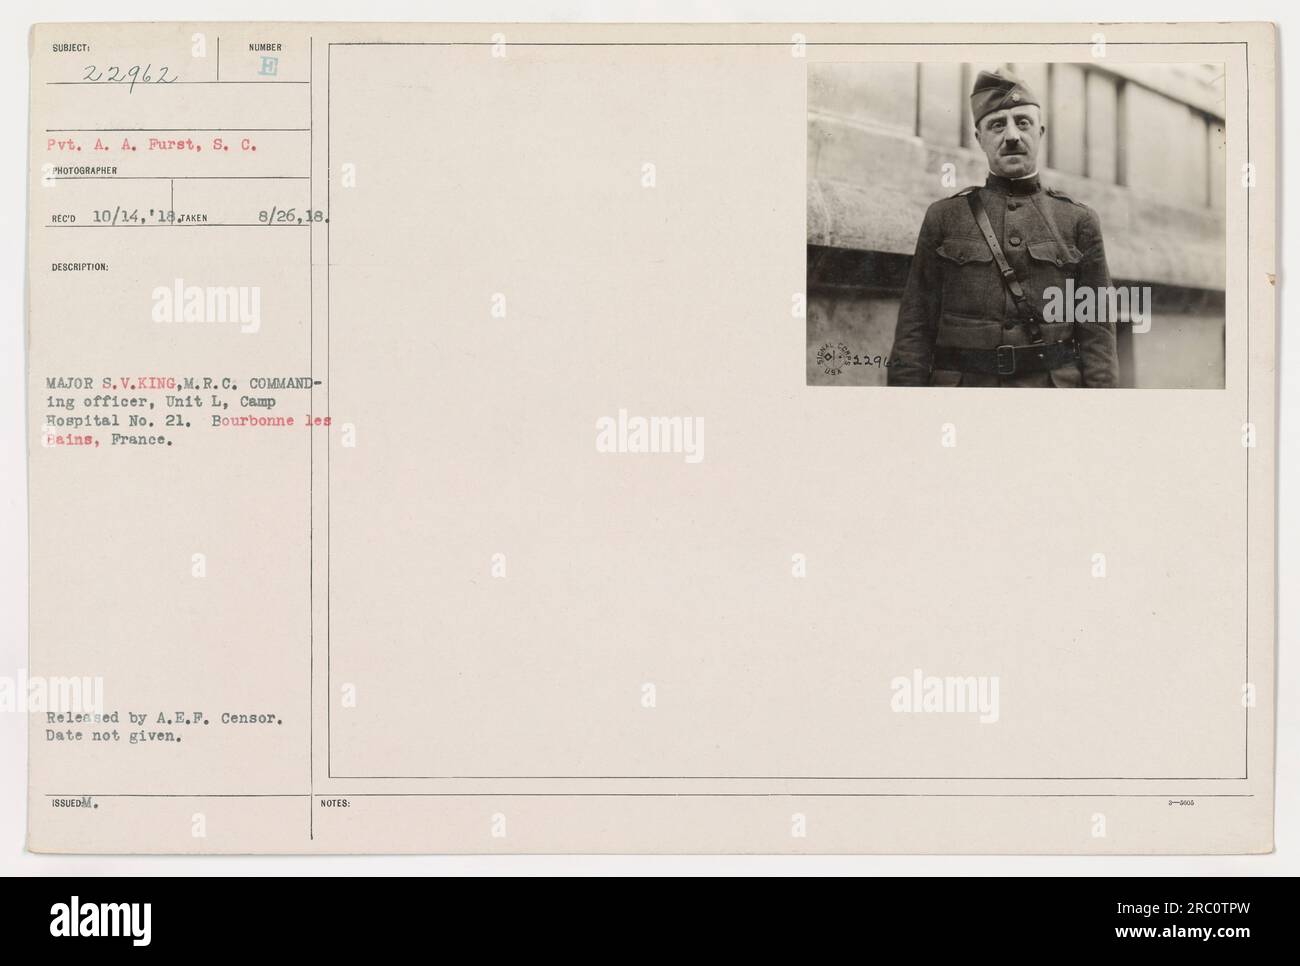 Pvt. A. Purst vom Signalkorps, auf diesem Foto zu sehen, steht neben Major S. V. King, dem kommandierenden Offizier der Einheit L im Camp Hospital Nr. 21 in Bourbonne les Bains, Frankreich. Das Datum des Bildes und andere Details sind nicht verfügbar. Stockfoto